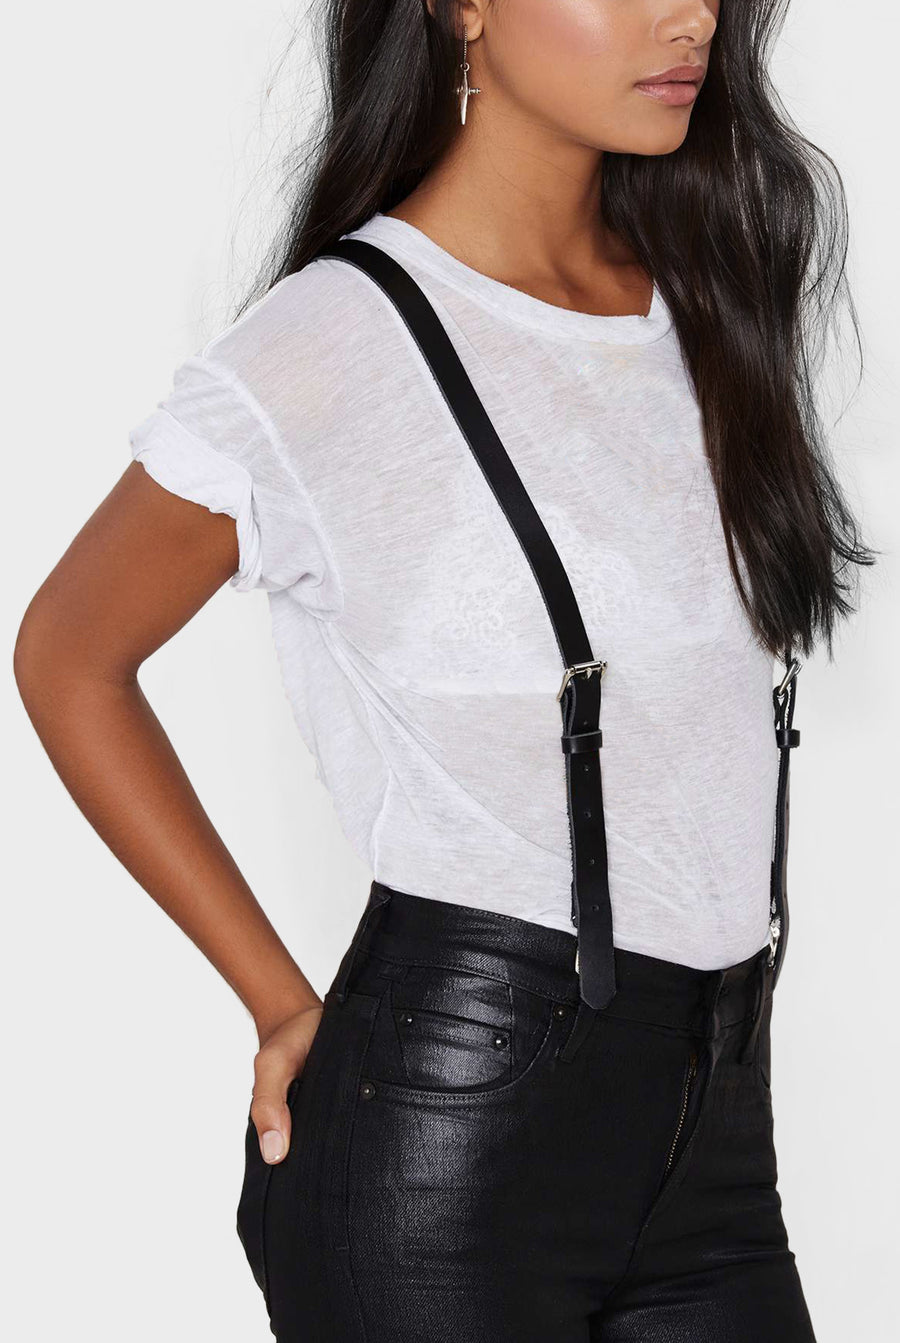 Shop Suspenders for Women & Women's Belts